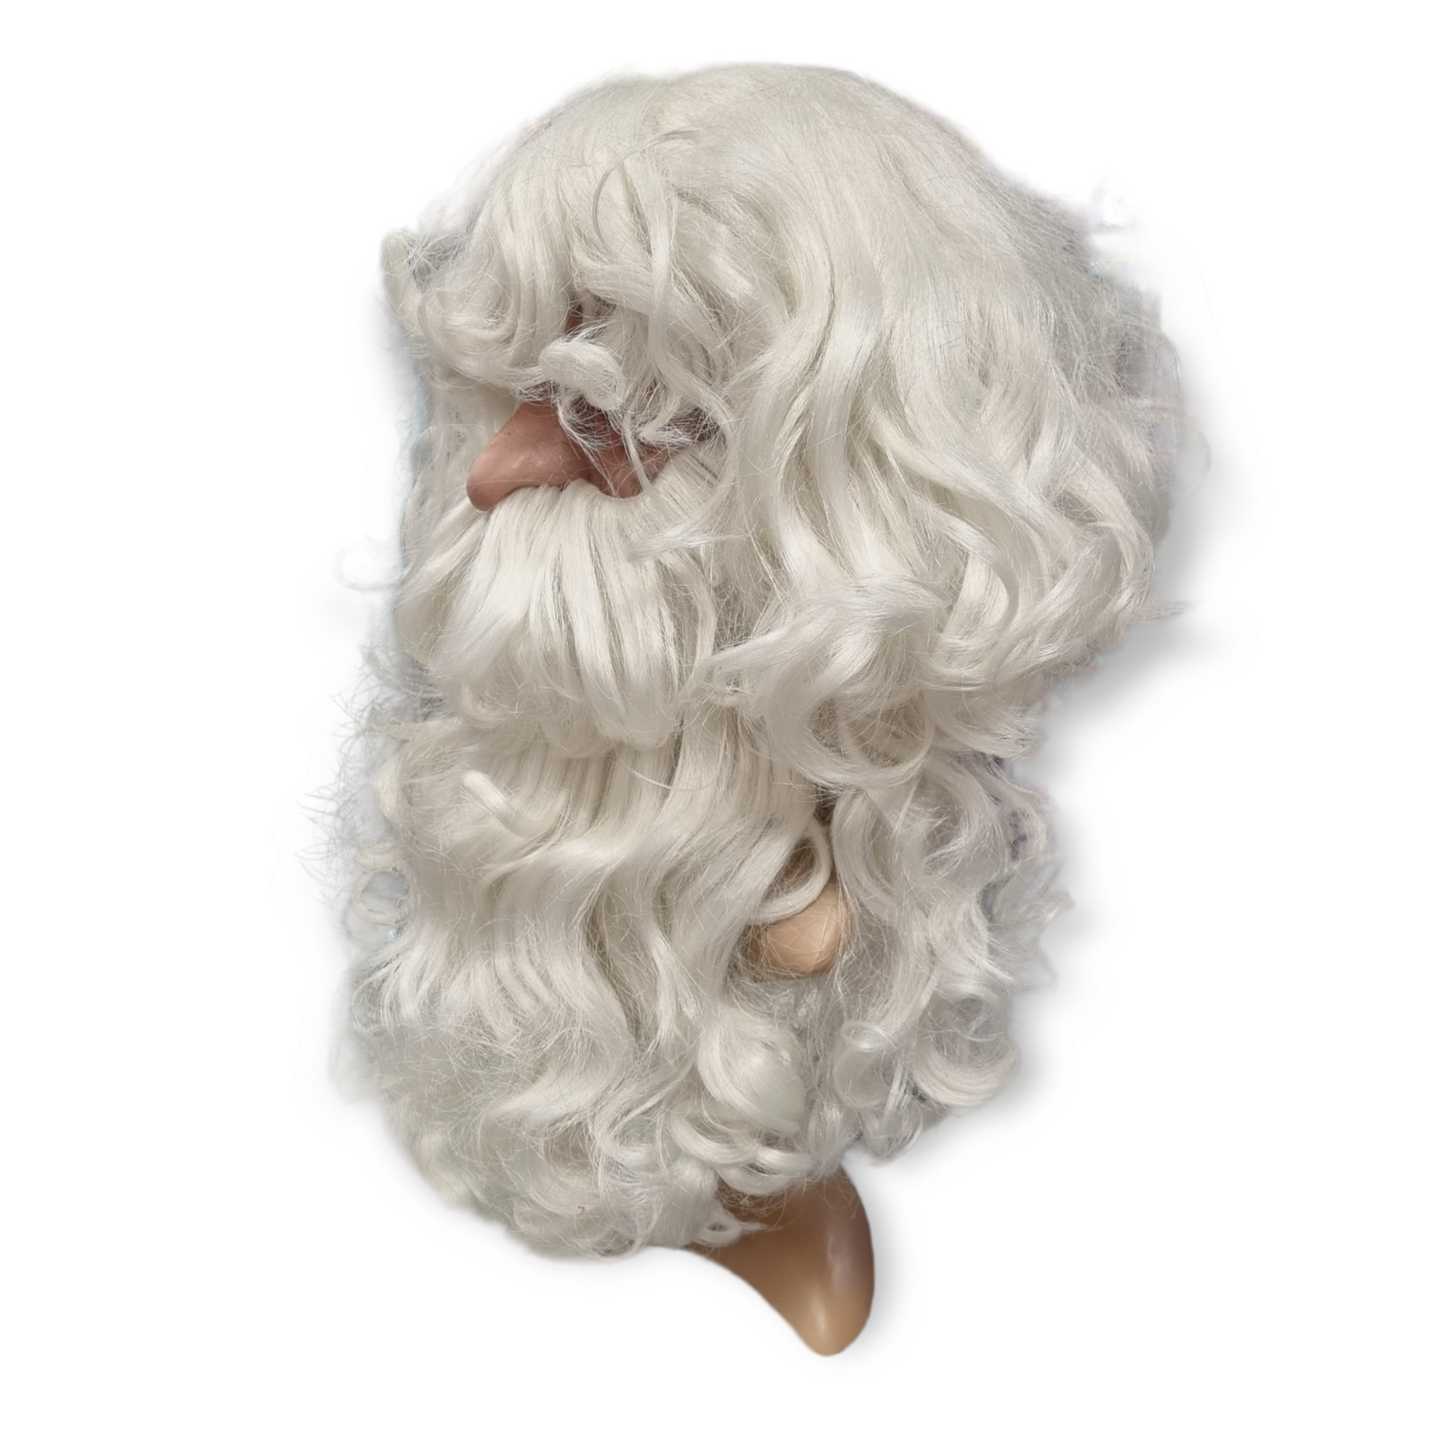 Smiffys Joulupukin parta ja peruukki, valkoinen